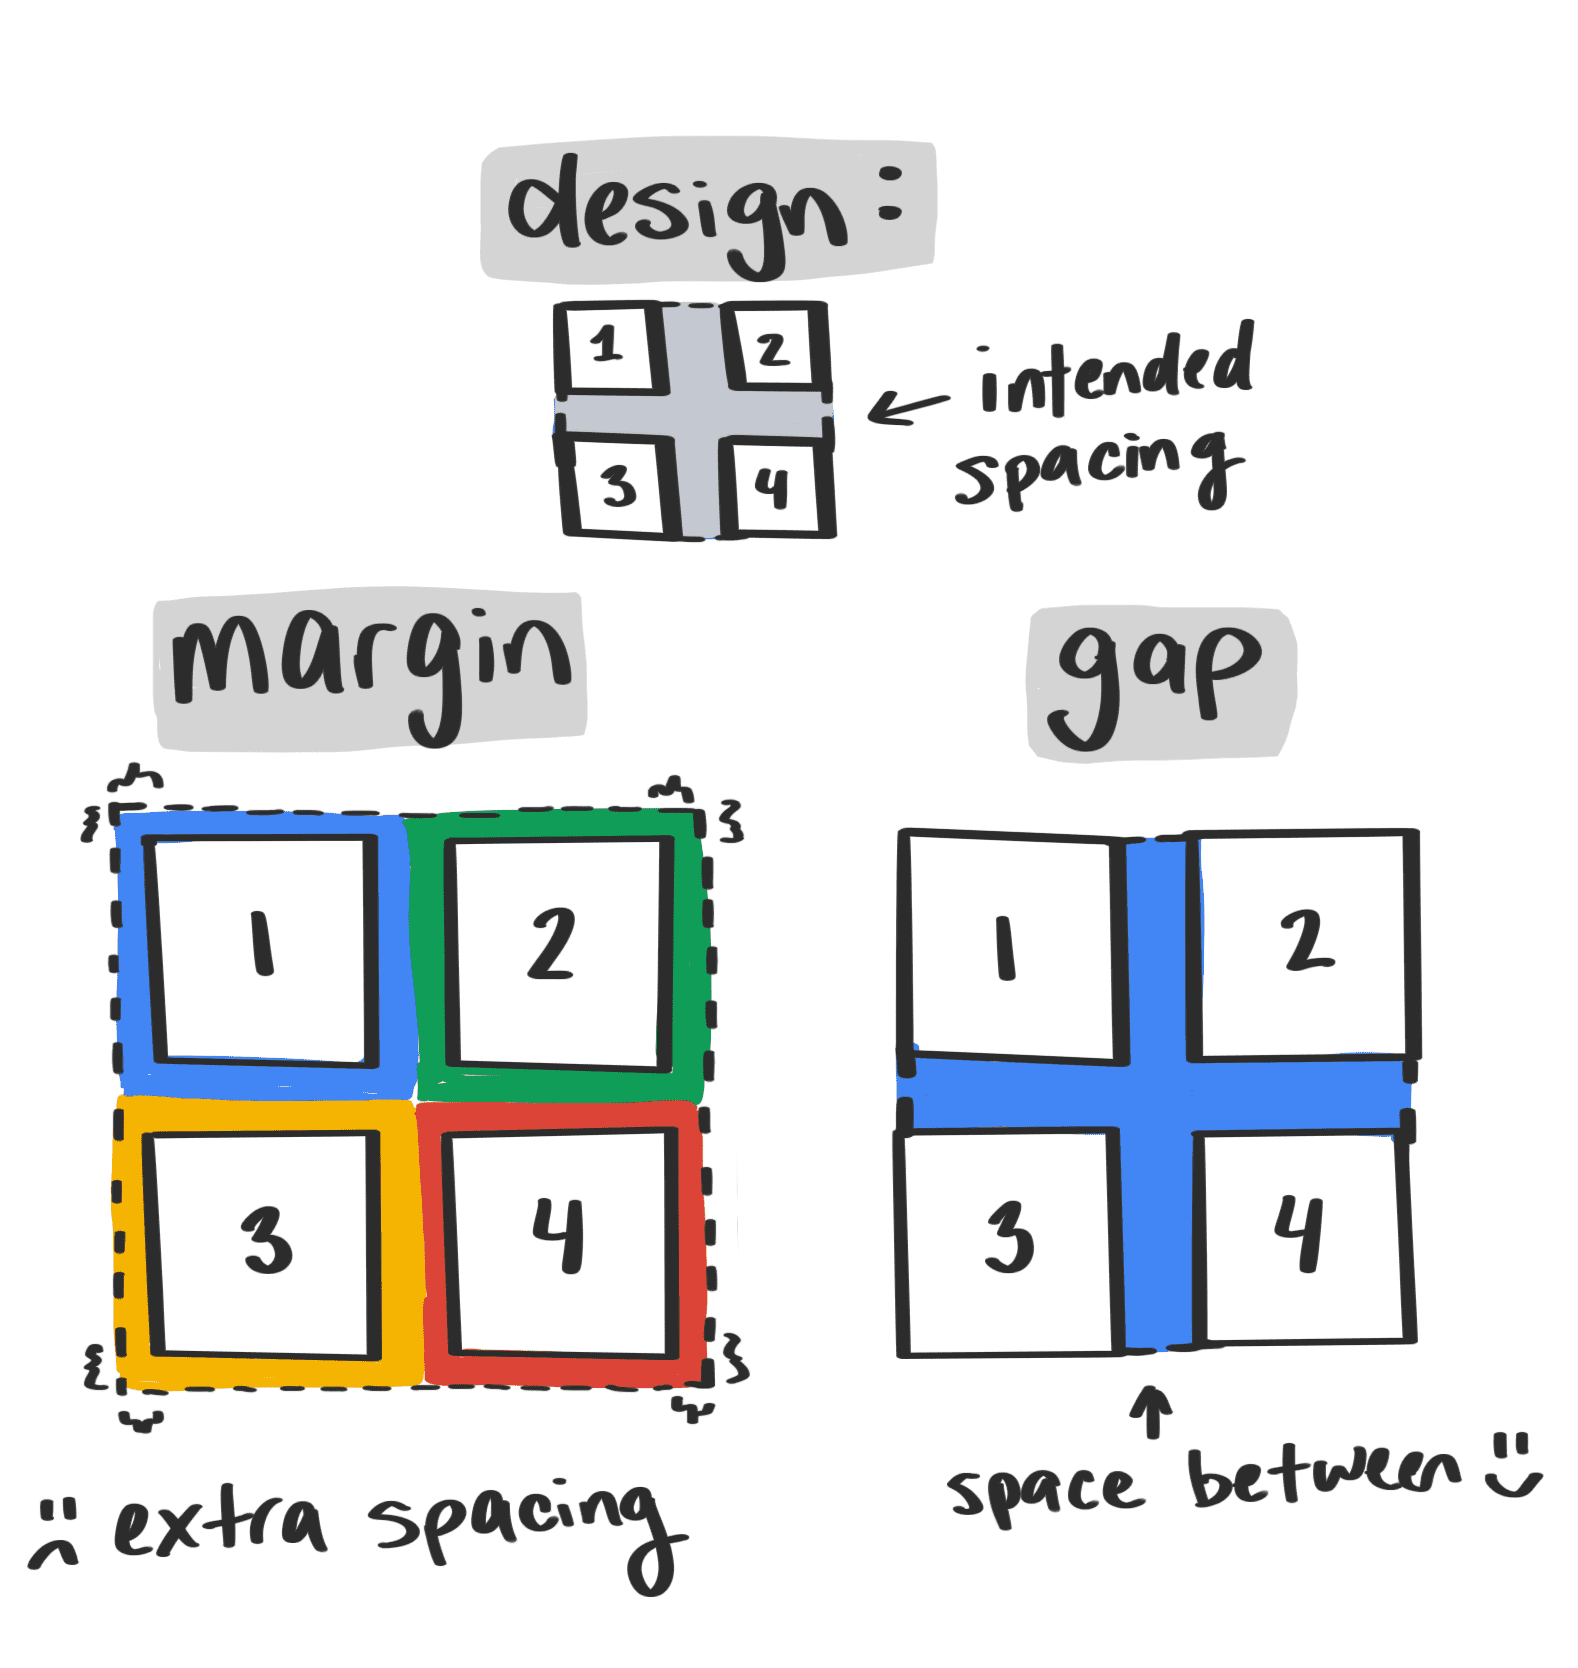 Illustrazione che mostra come la proprietà gap evita spazi involontari intorno ai bordi di un elemento container.